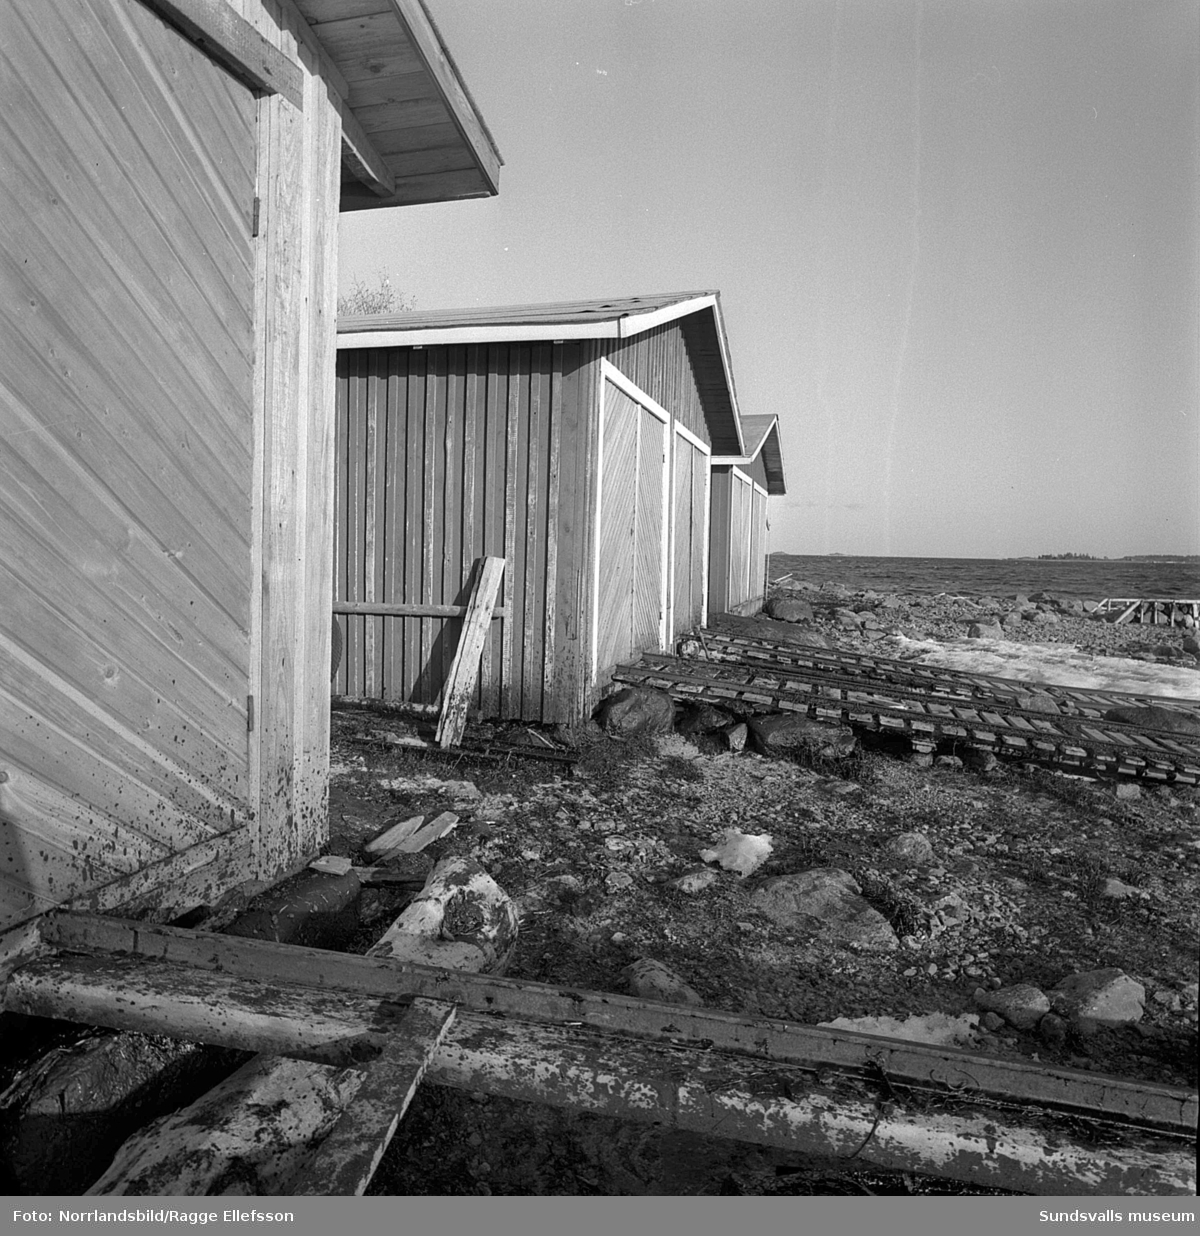 Oljeskadad kust vid Havstoviken och Spikarna på Alnö efter den norska oljetankern Gogstad som strandade och bröts sönder vid Bremö kalv den 1 december 1964.